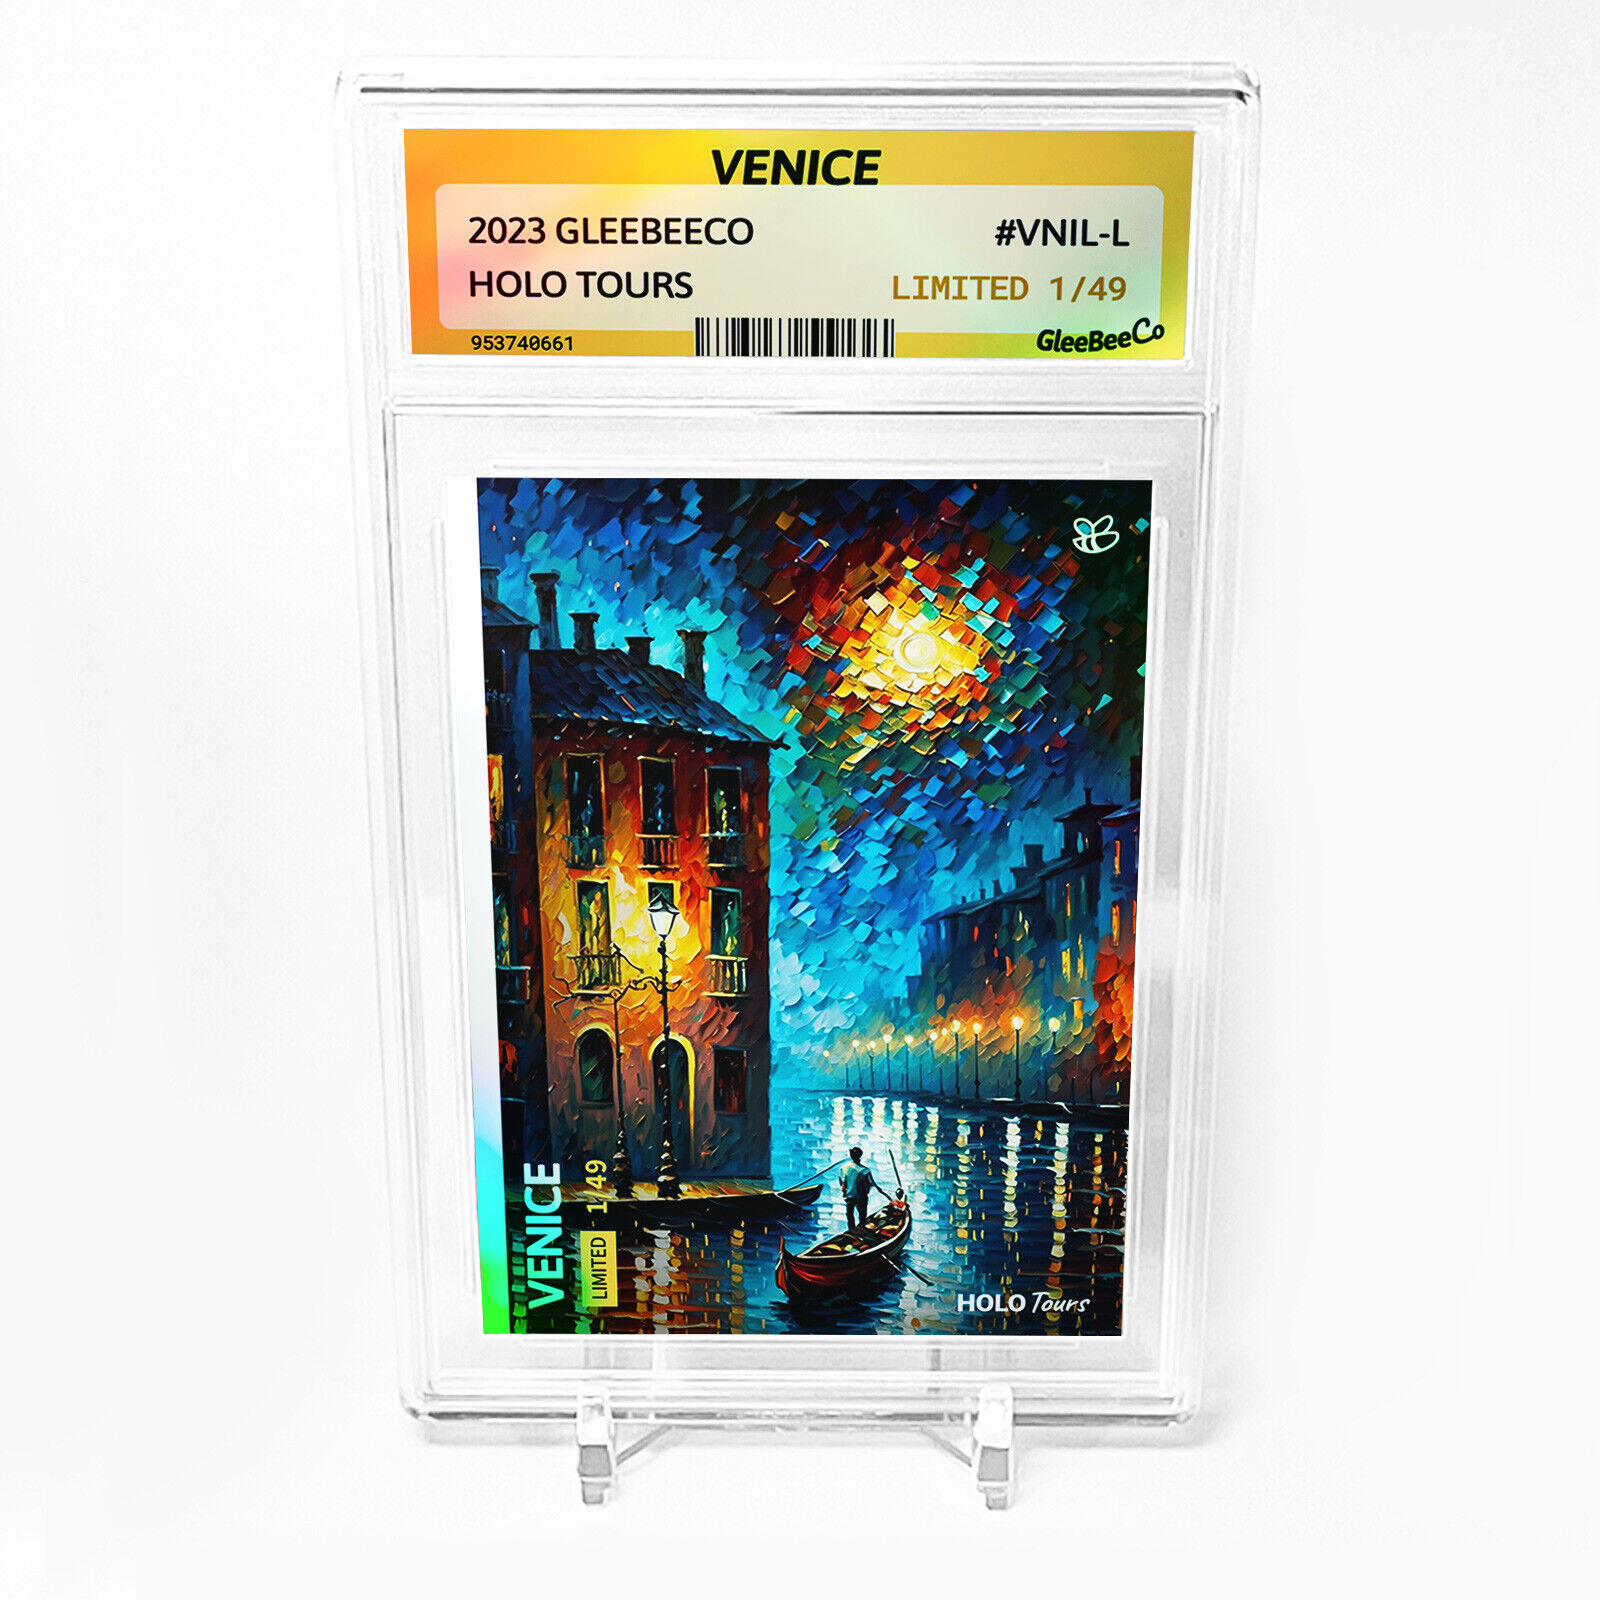 VENICE Italy Card 2023 GleeBeeCo Holo Tours #VNIL-L /49